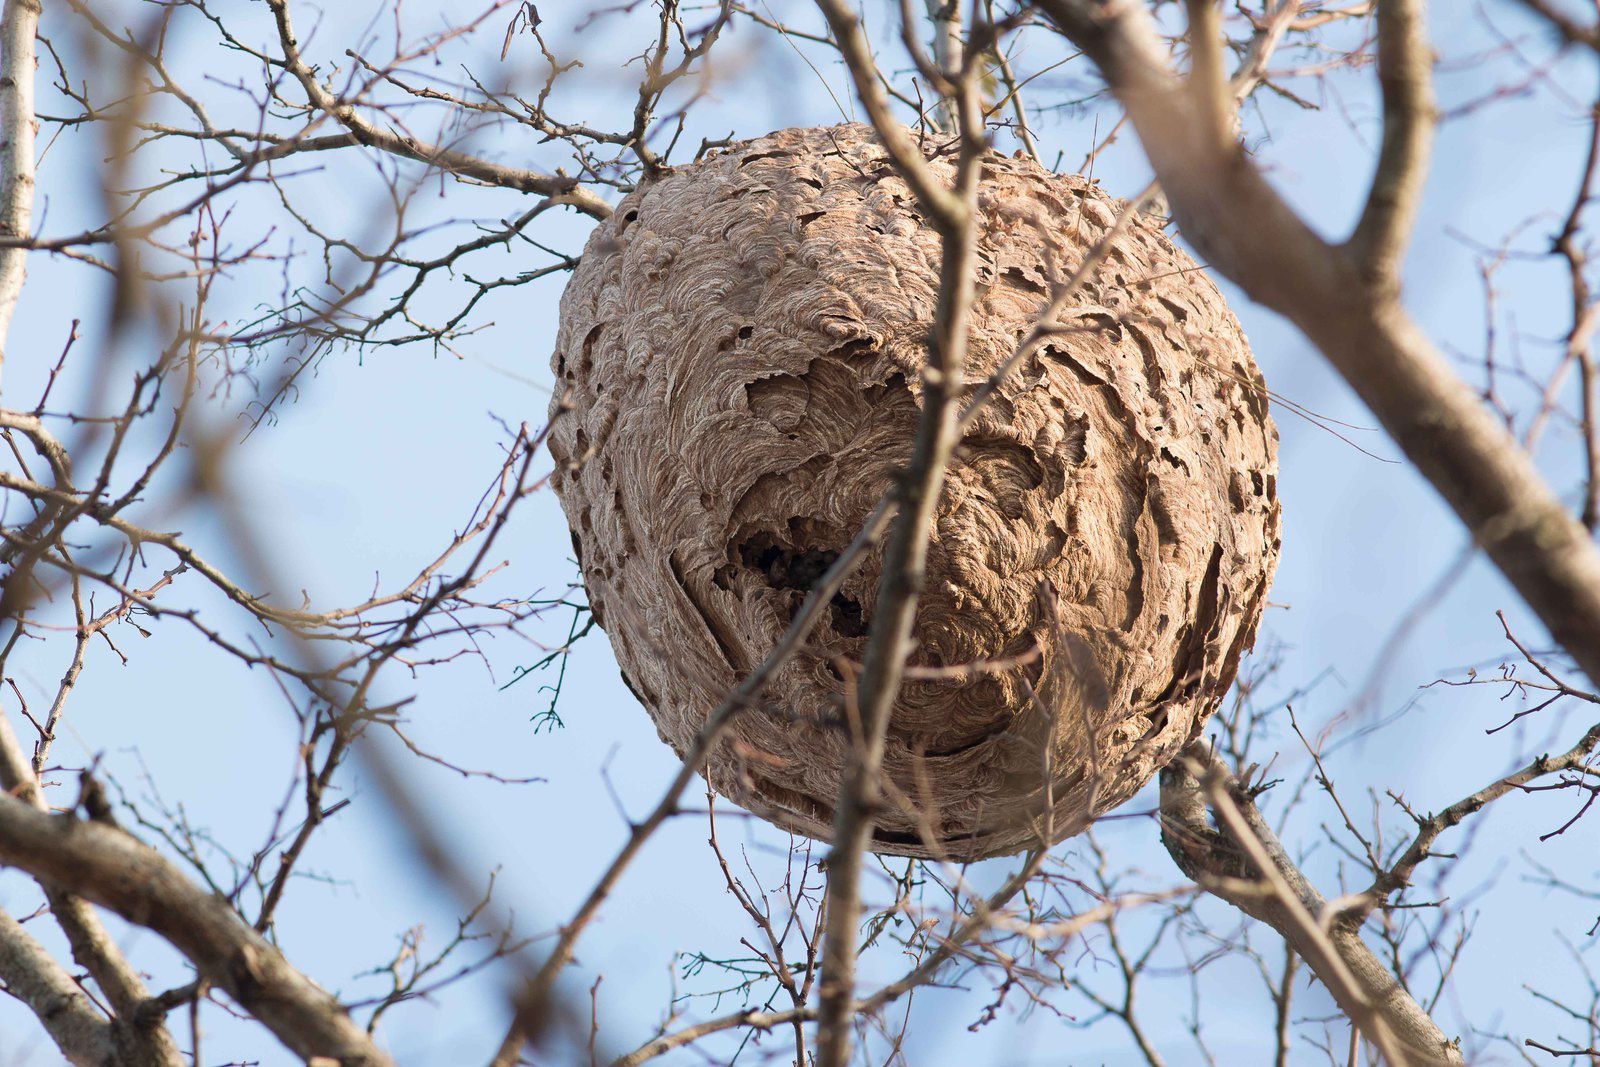 Des nids faciles à repérer en cette saison.